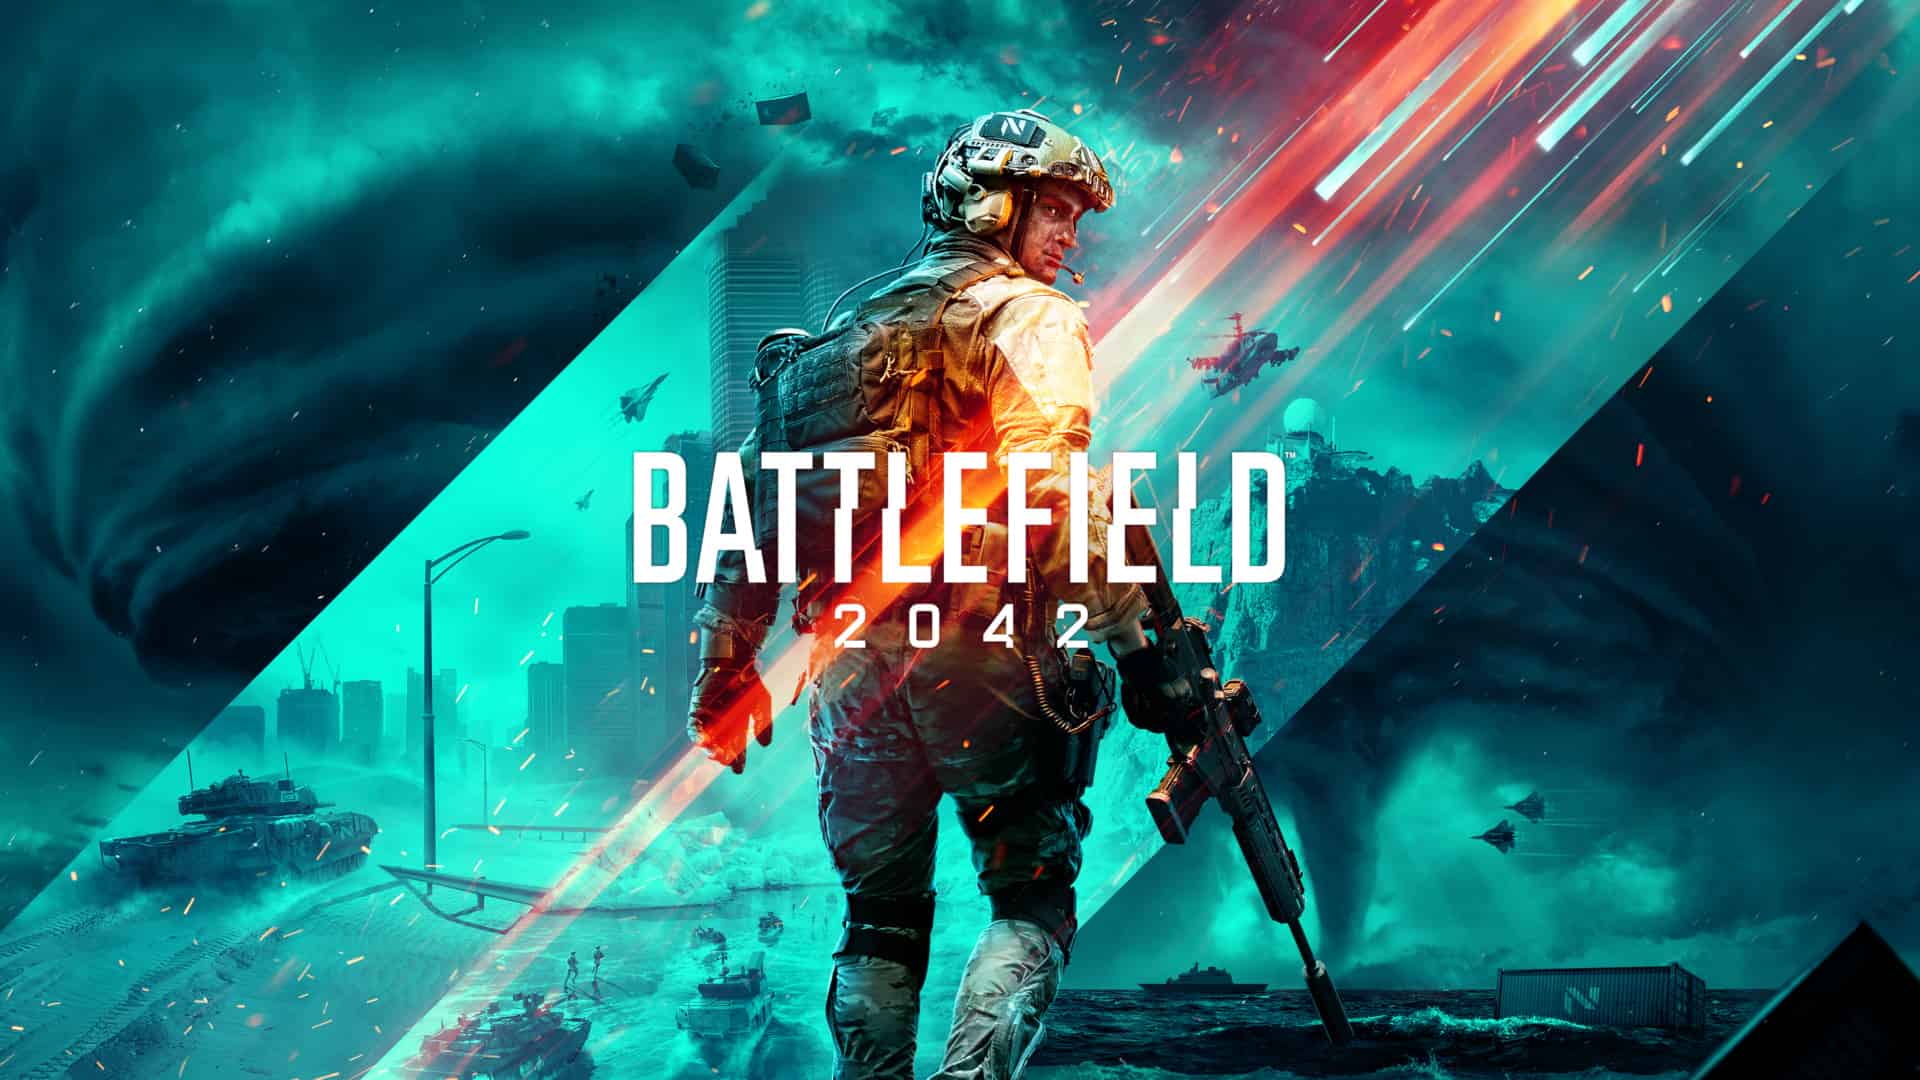 Battlefield 2042 is in the sale